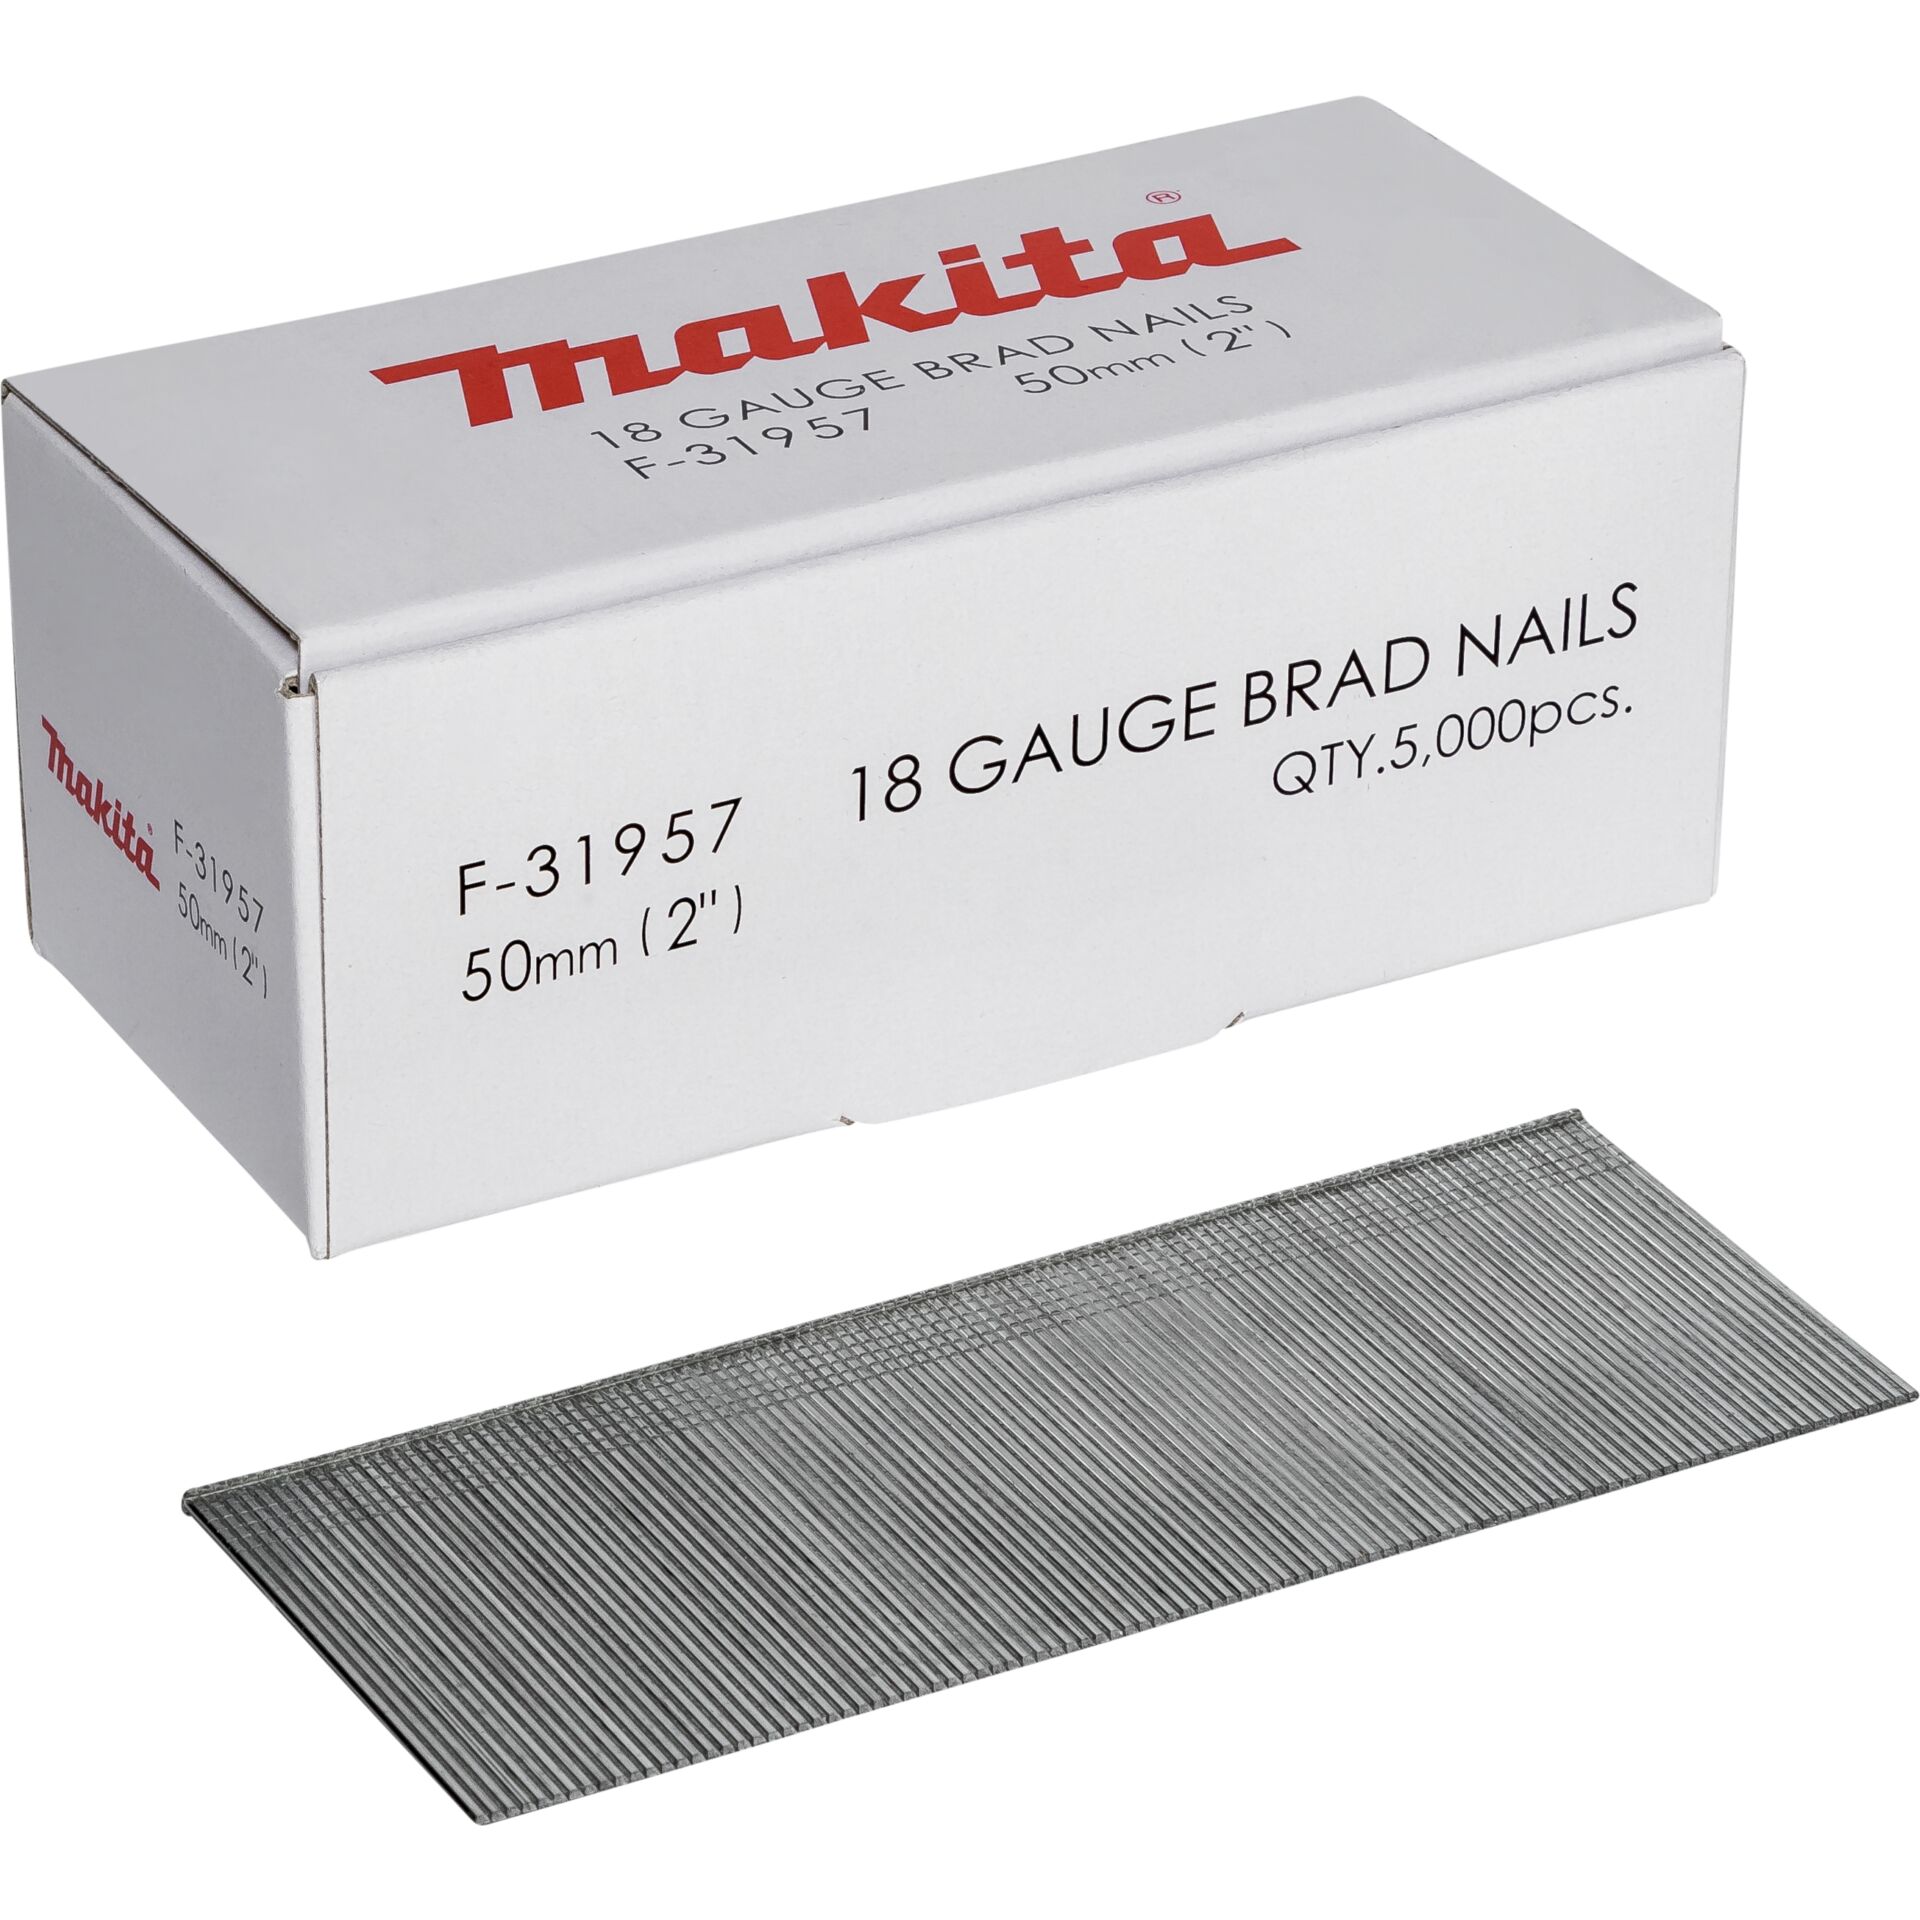 Makita Gauge Brad Nails 1,2x50mm F-31957  5000 pcs.